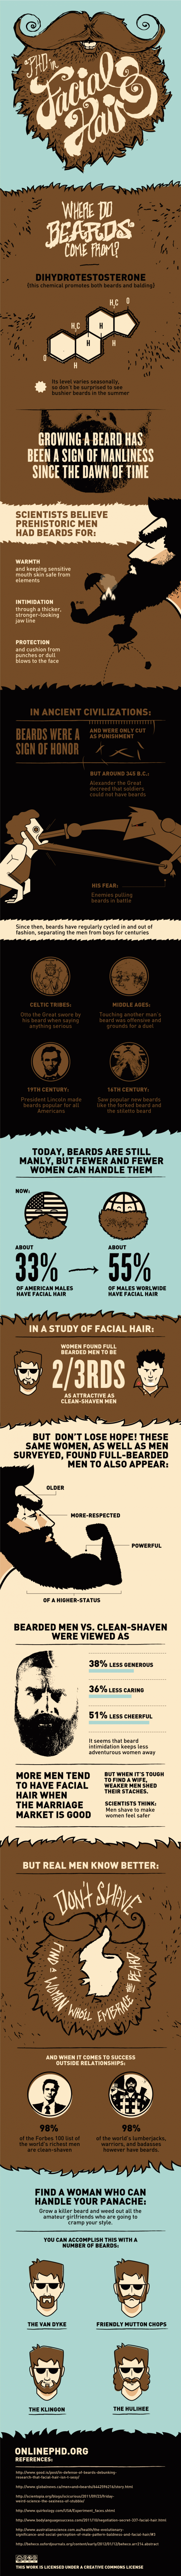 Perché lasciarsi crescere la barba